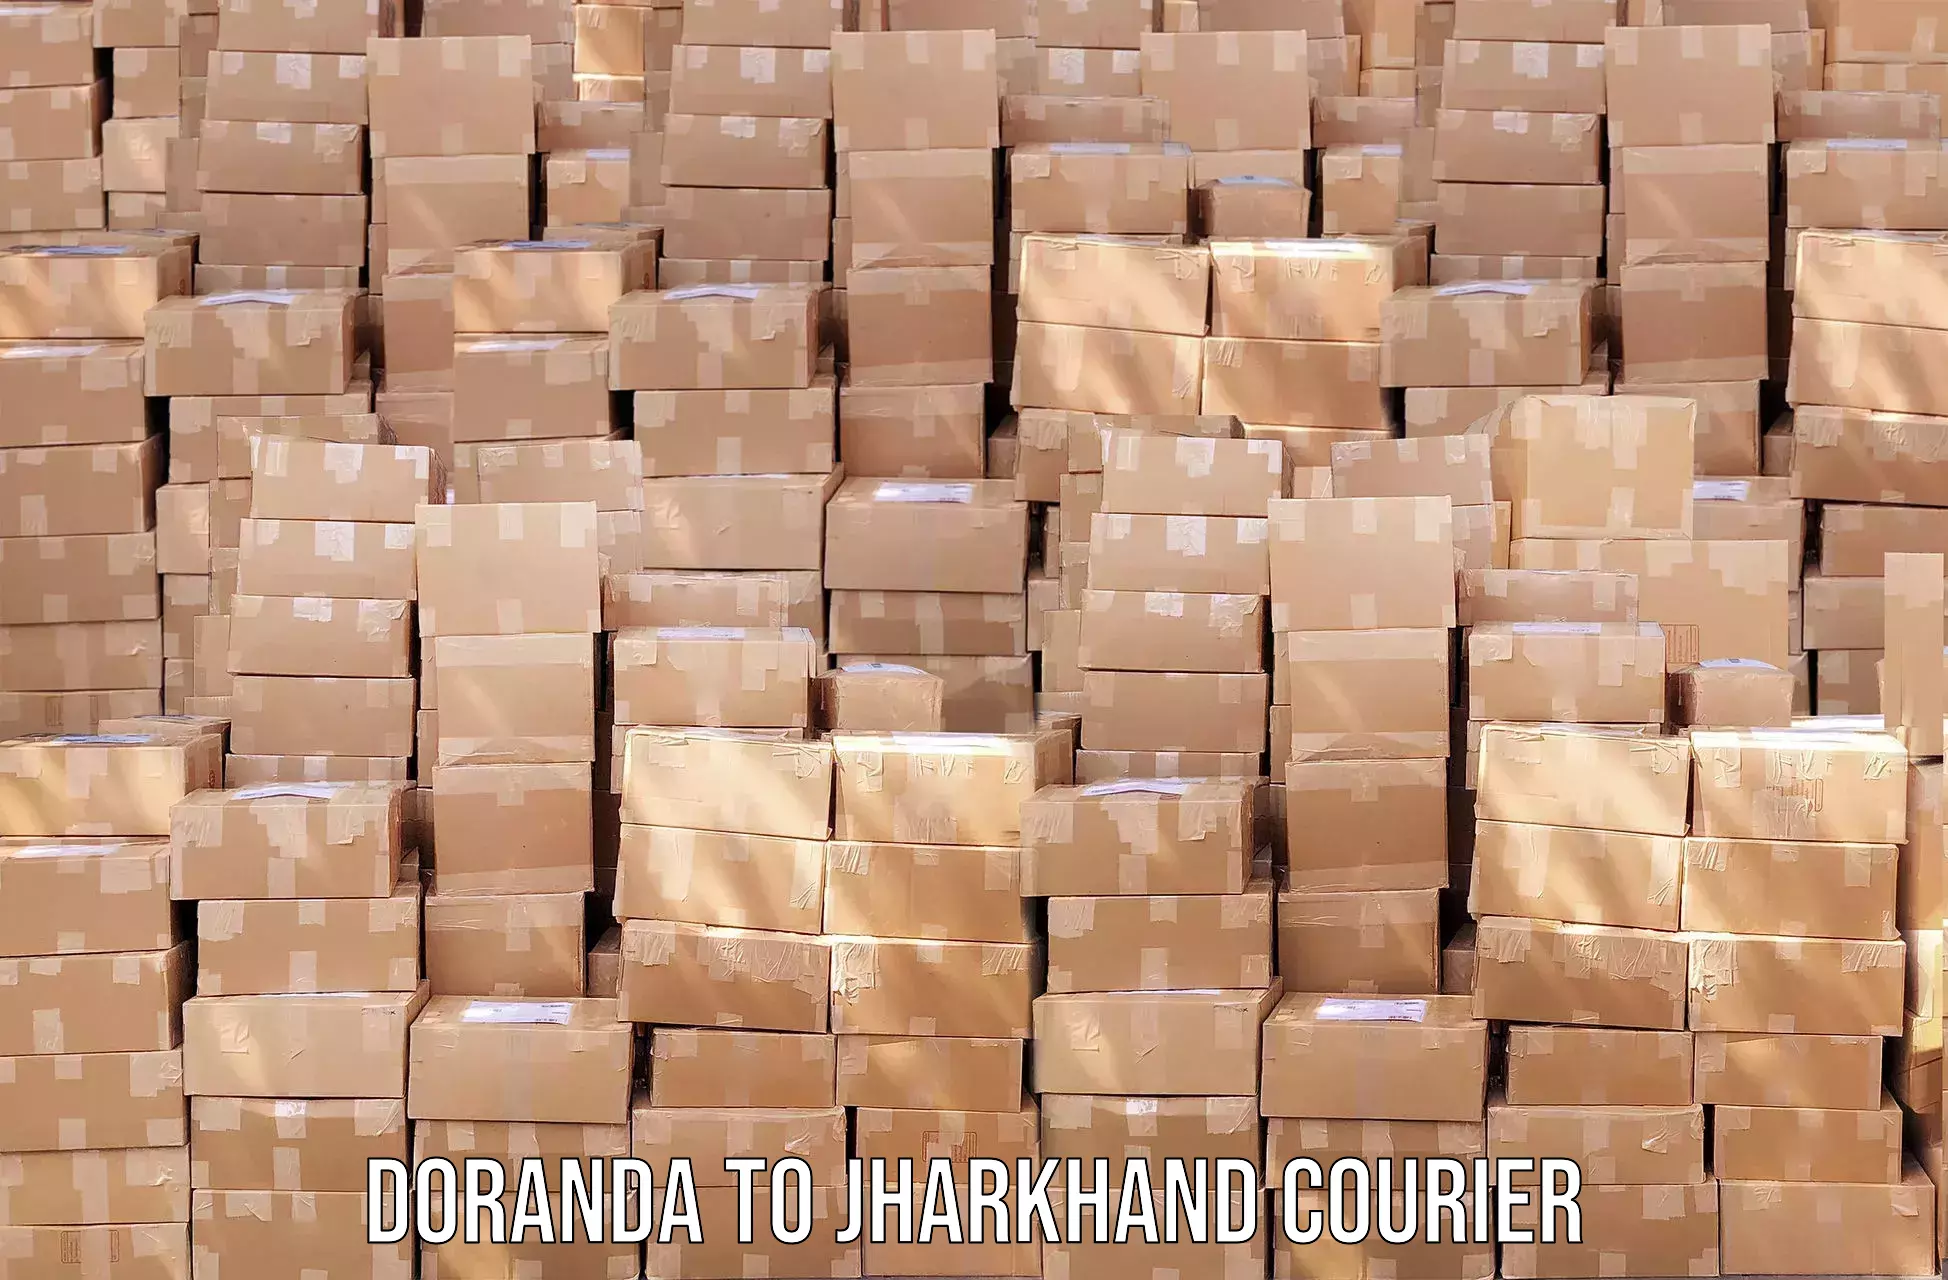 High value parcel delivery Doranda to Adityapur